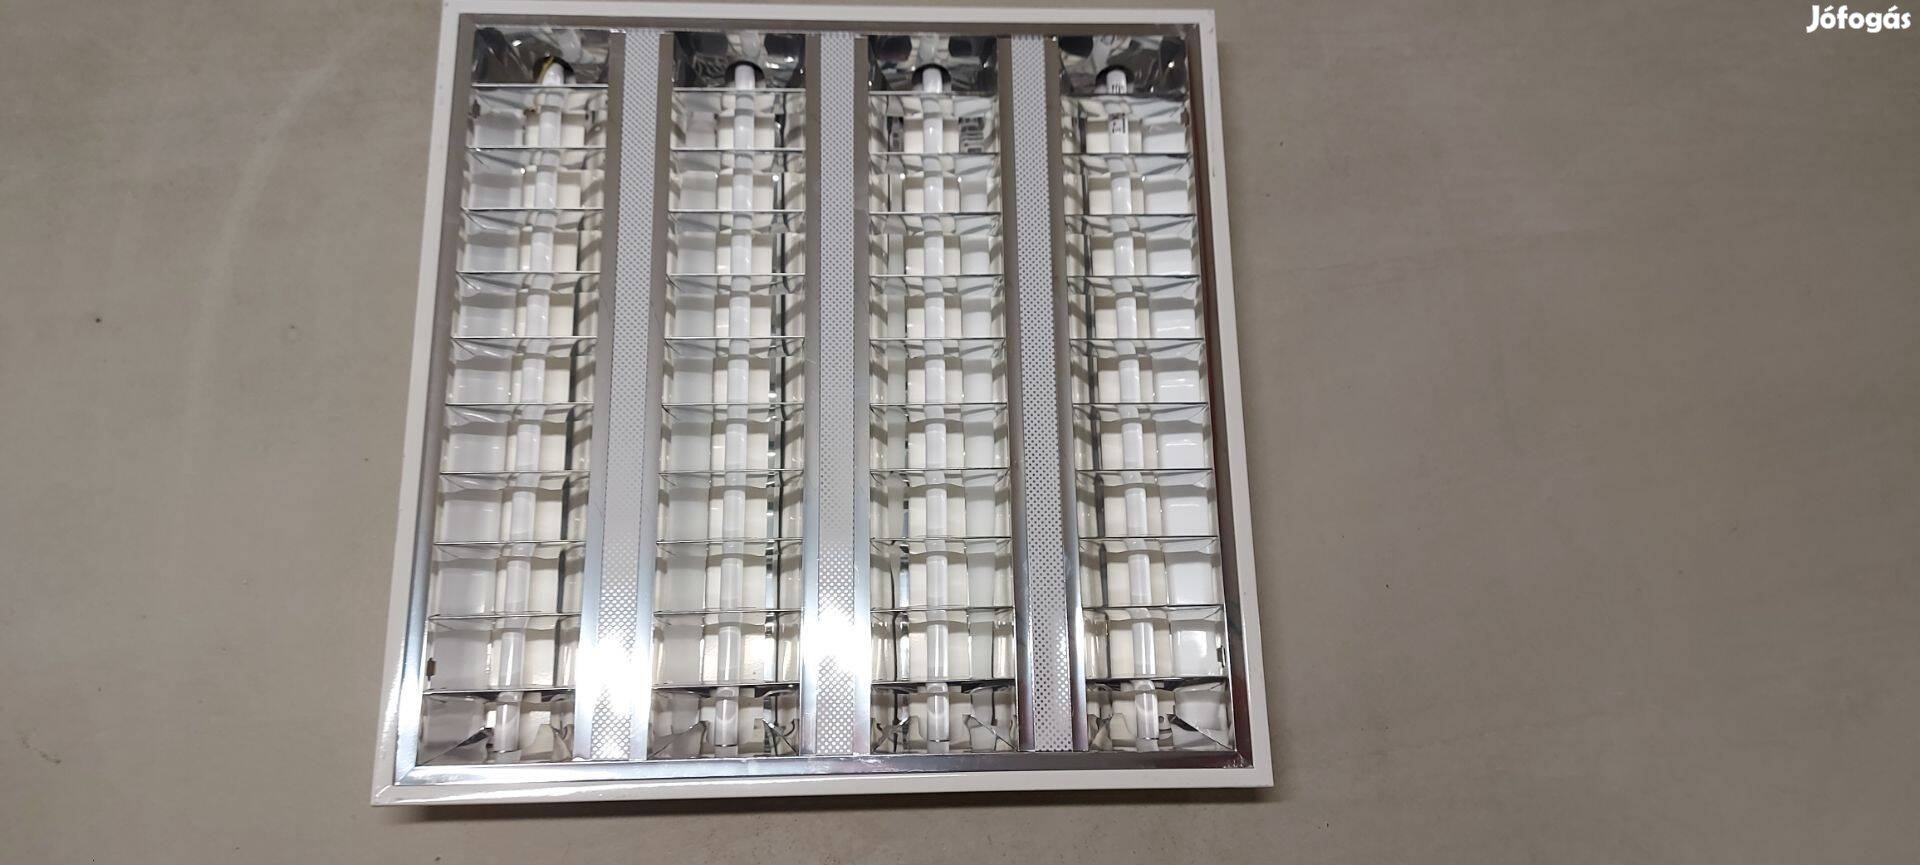 60x60 álmennyezeti tükrös armatúra lámpatest fénycsövekkel